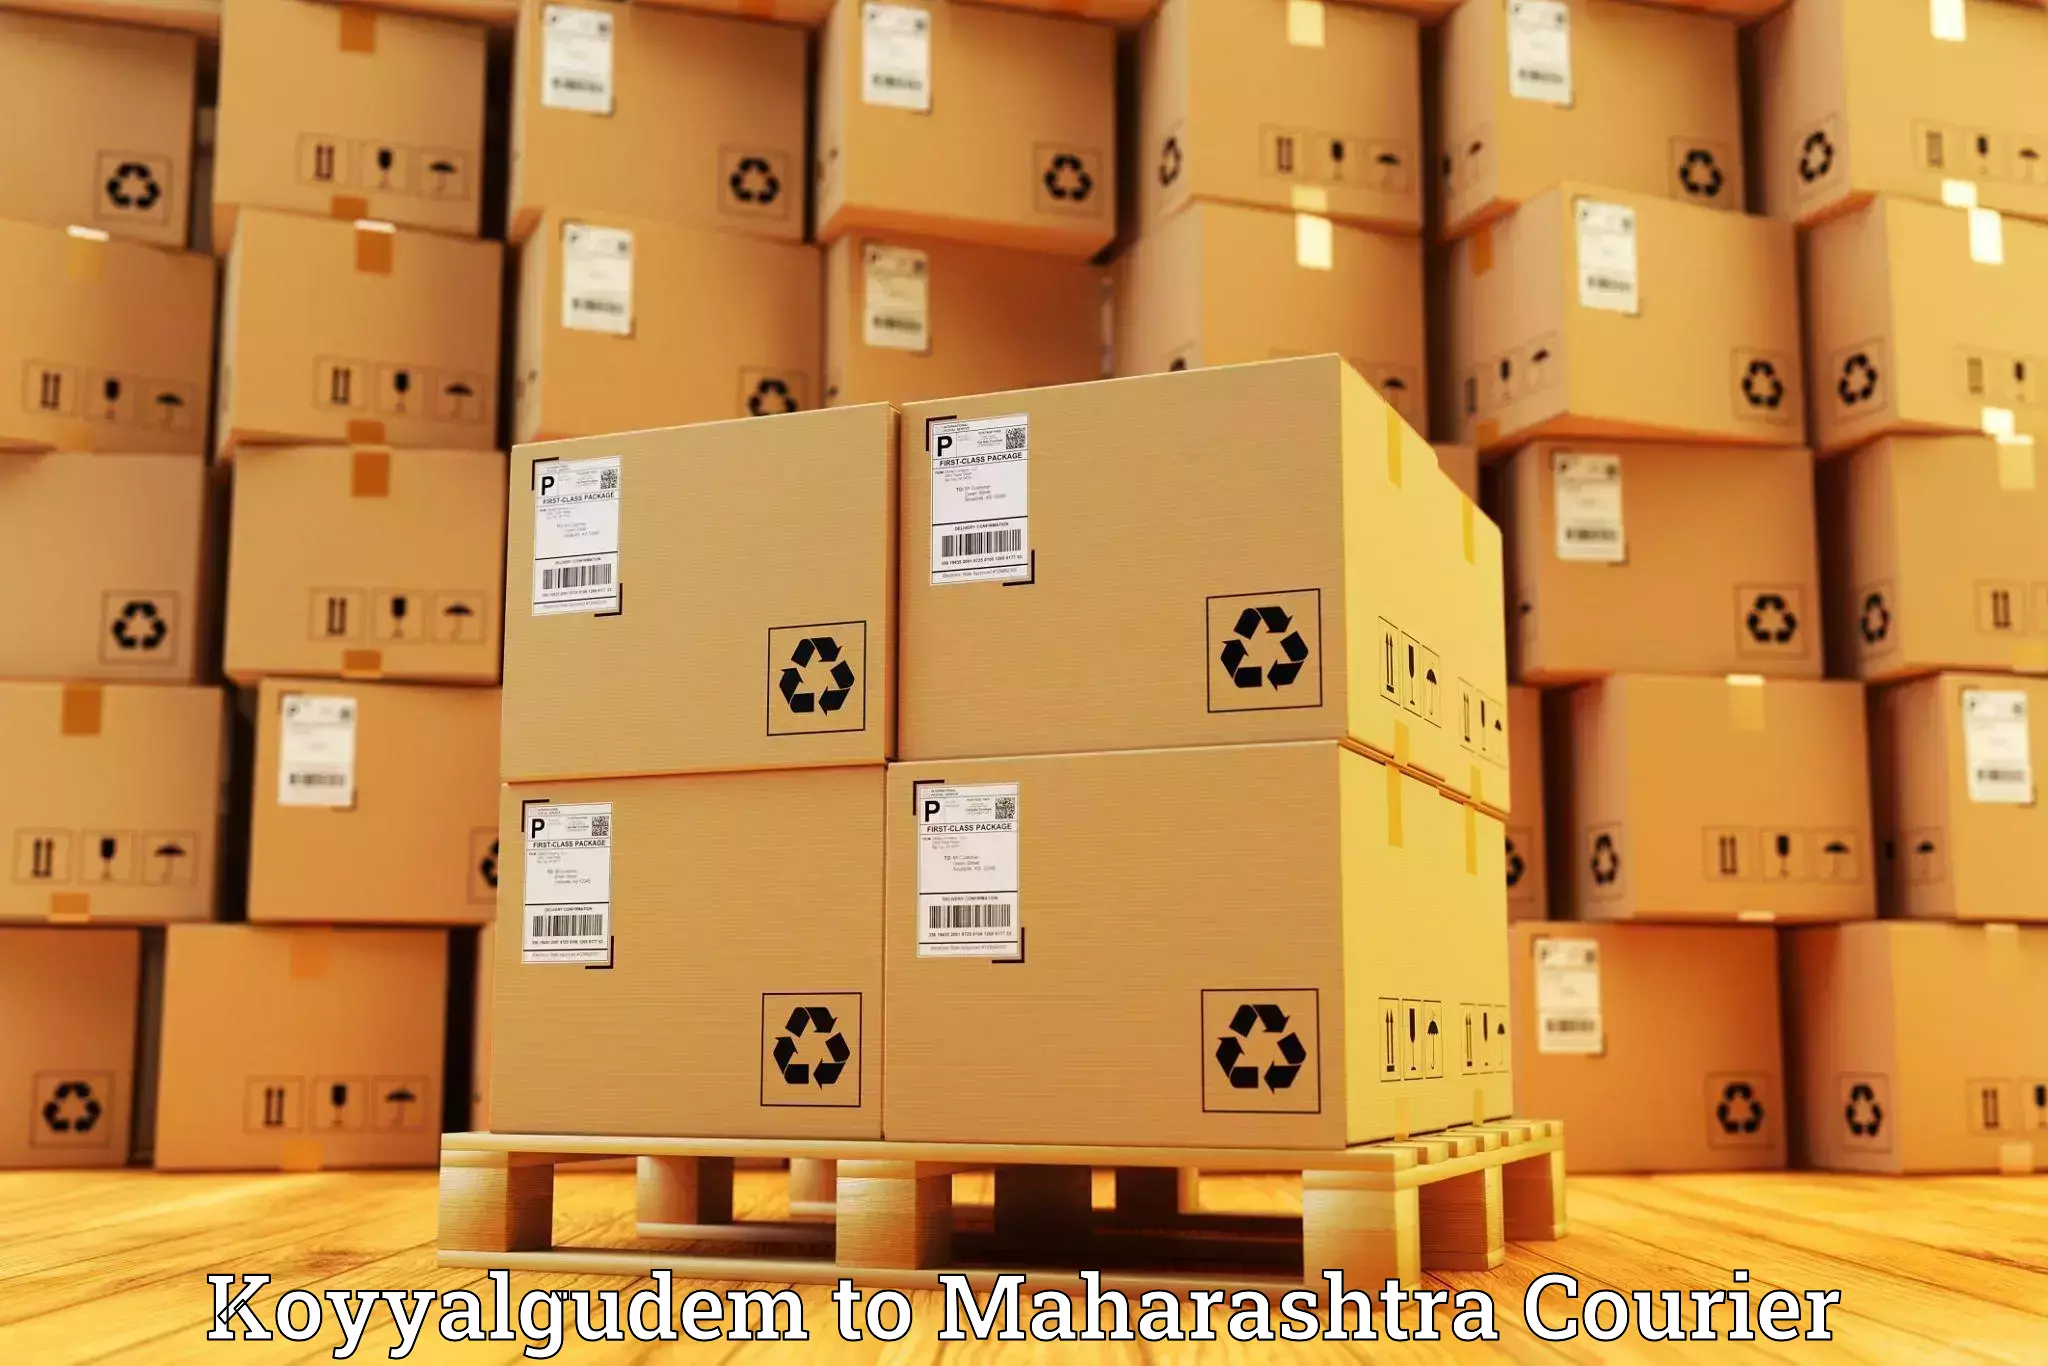 Courier service comparison Koyyalgudem to Walchandnagar